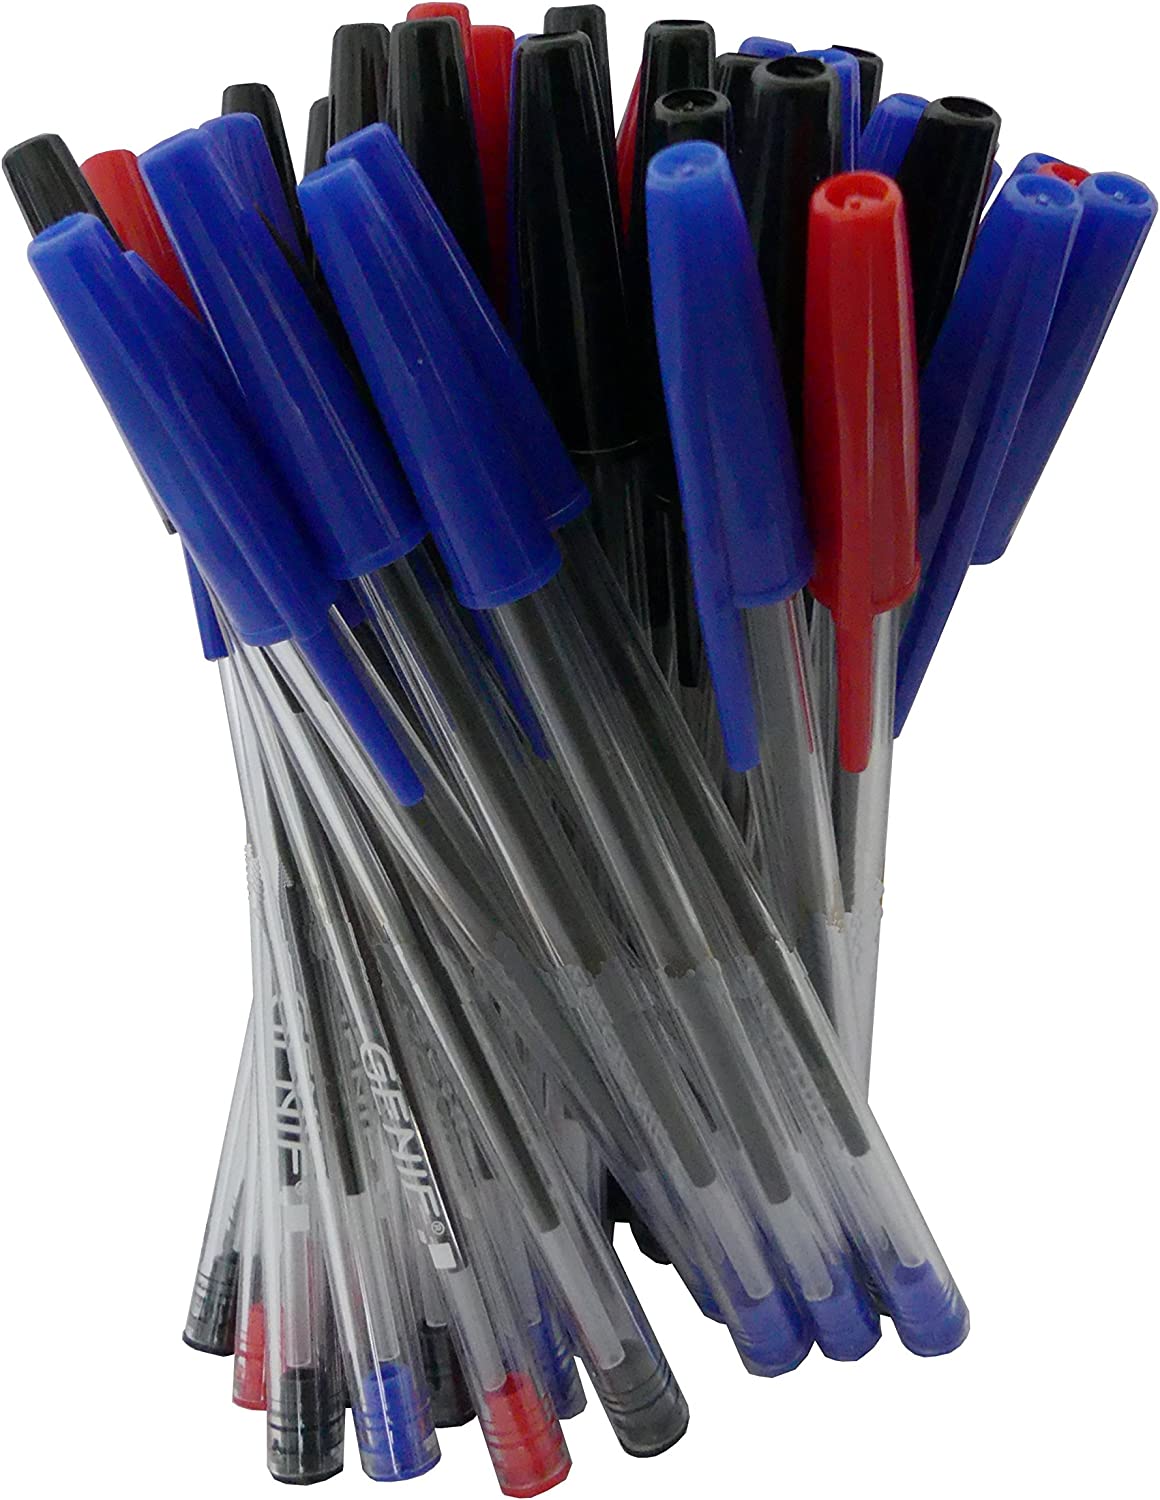 50 x Genie Kugelschreiber Farbig Sortiert Rot/Blau/Schwarz